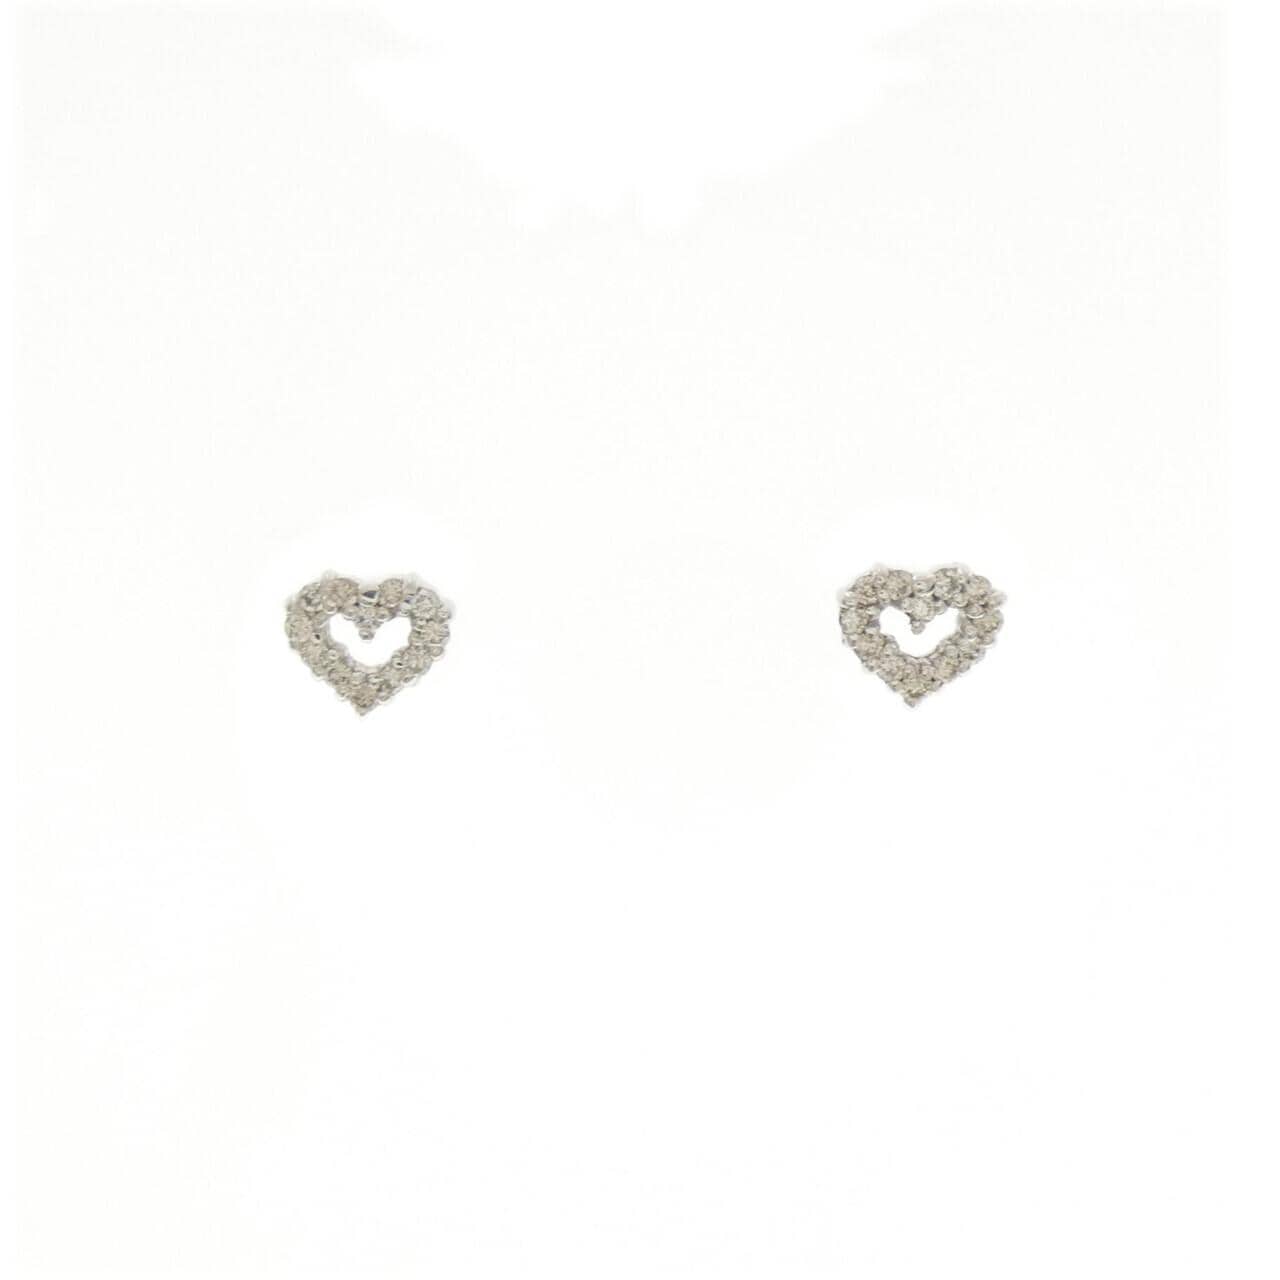 K18WG Heart Diamond Earrings 0.16CT